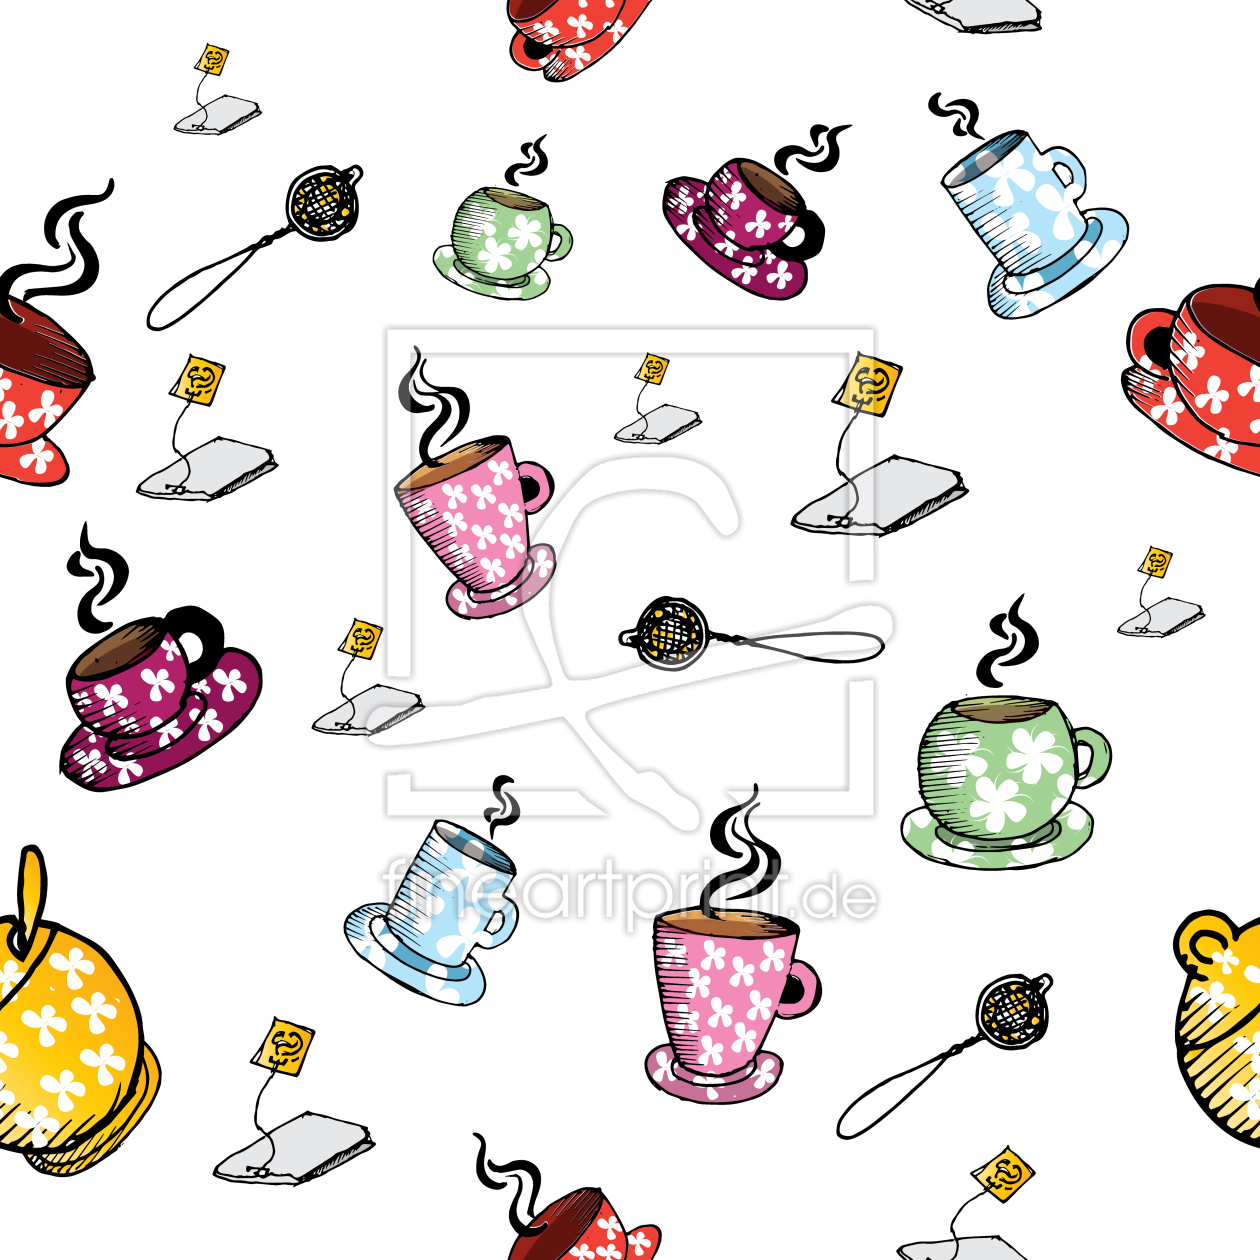 Bild-Nr.: 9007746 Tea-Time mit Freunden erstellt von patterndesigns-com